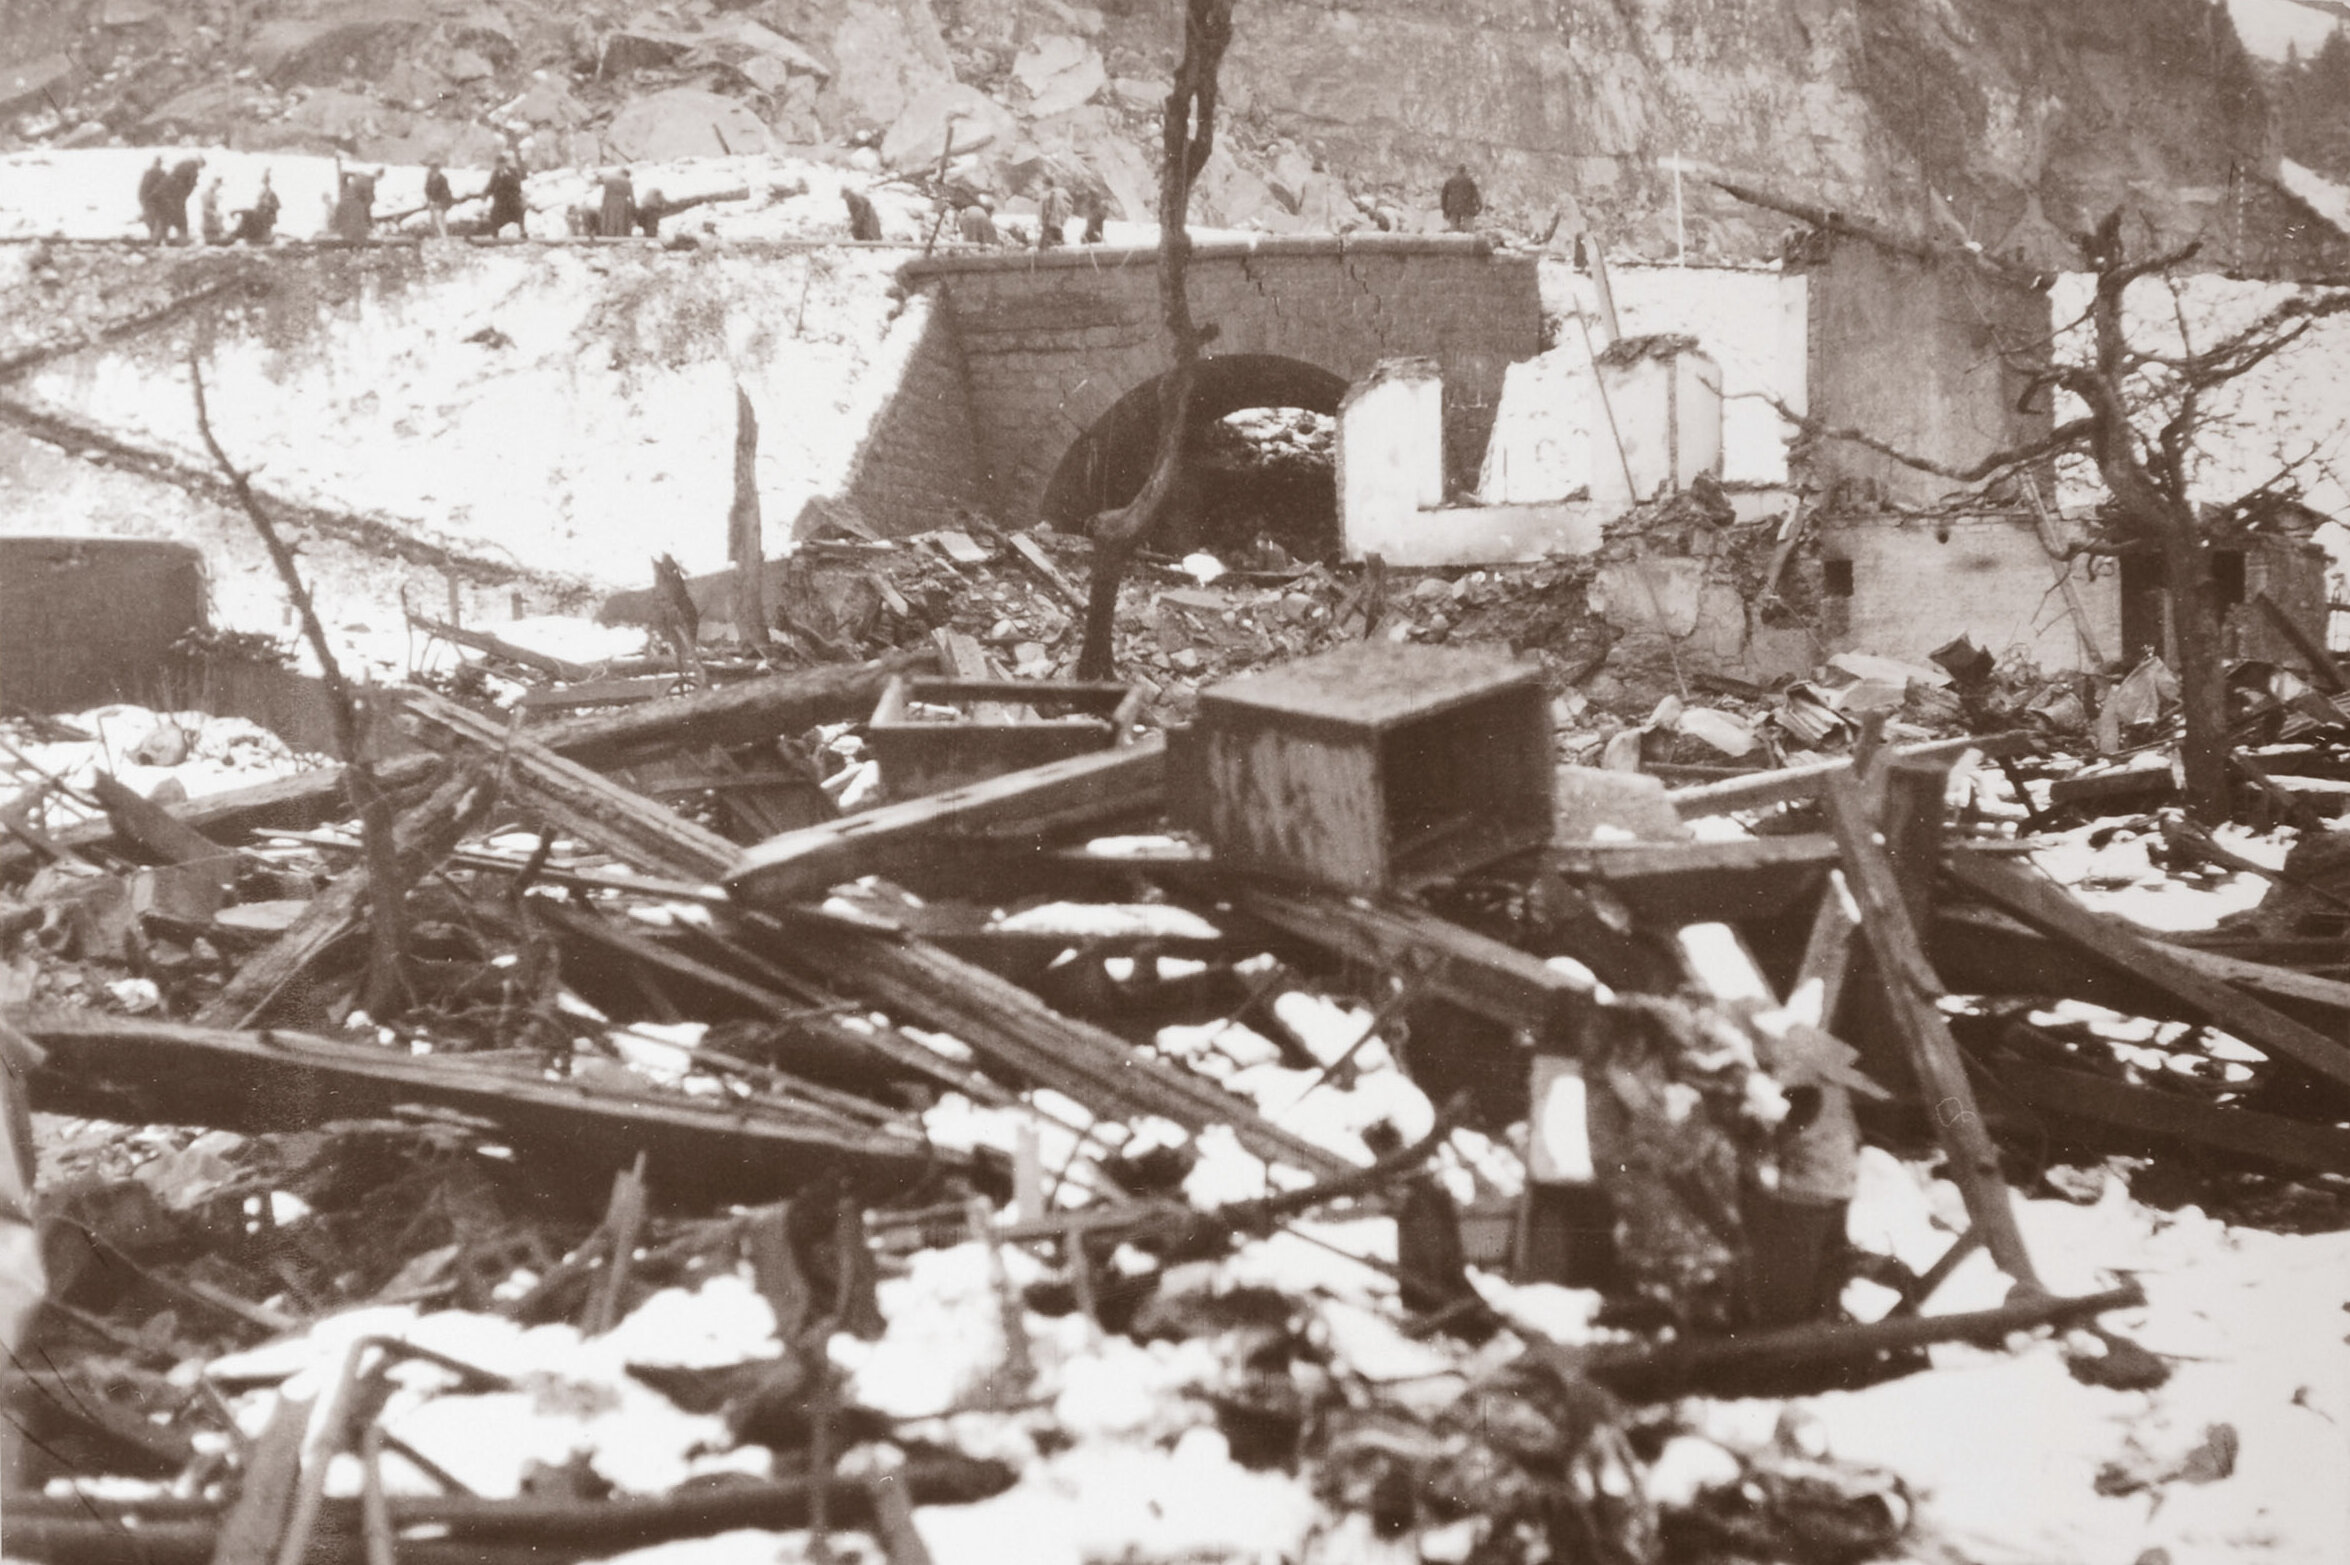 Aufnahme der explodierten Fluh und des zerstörten Dorfes Mitholz